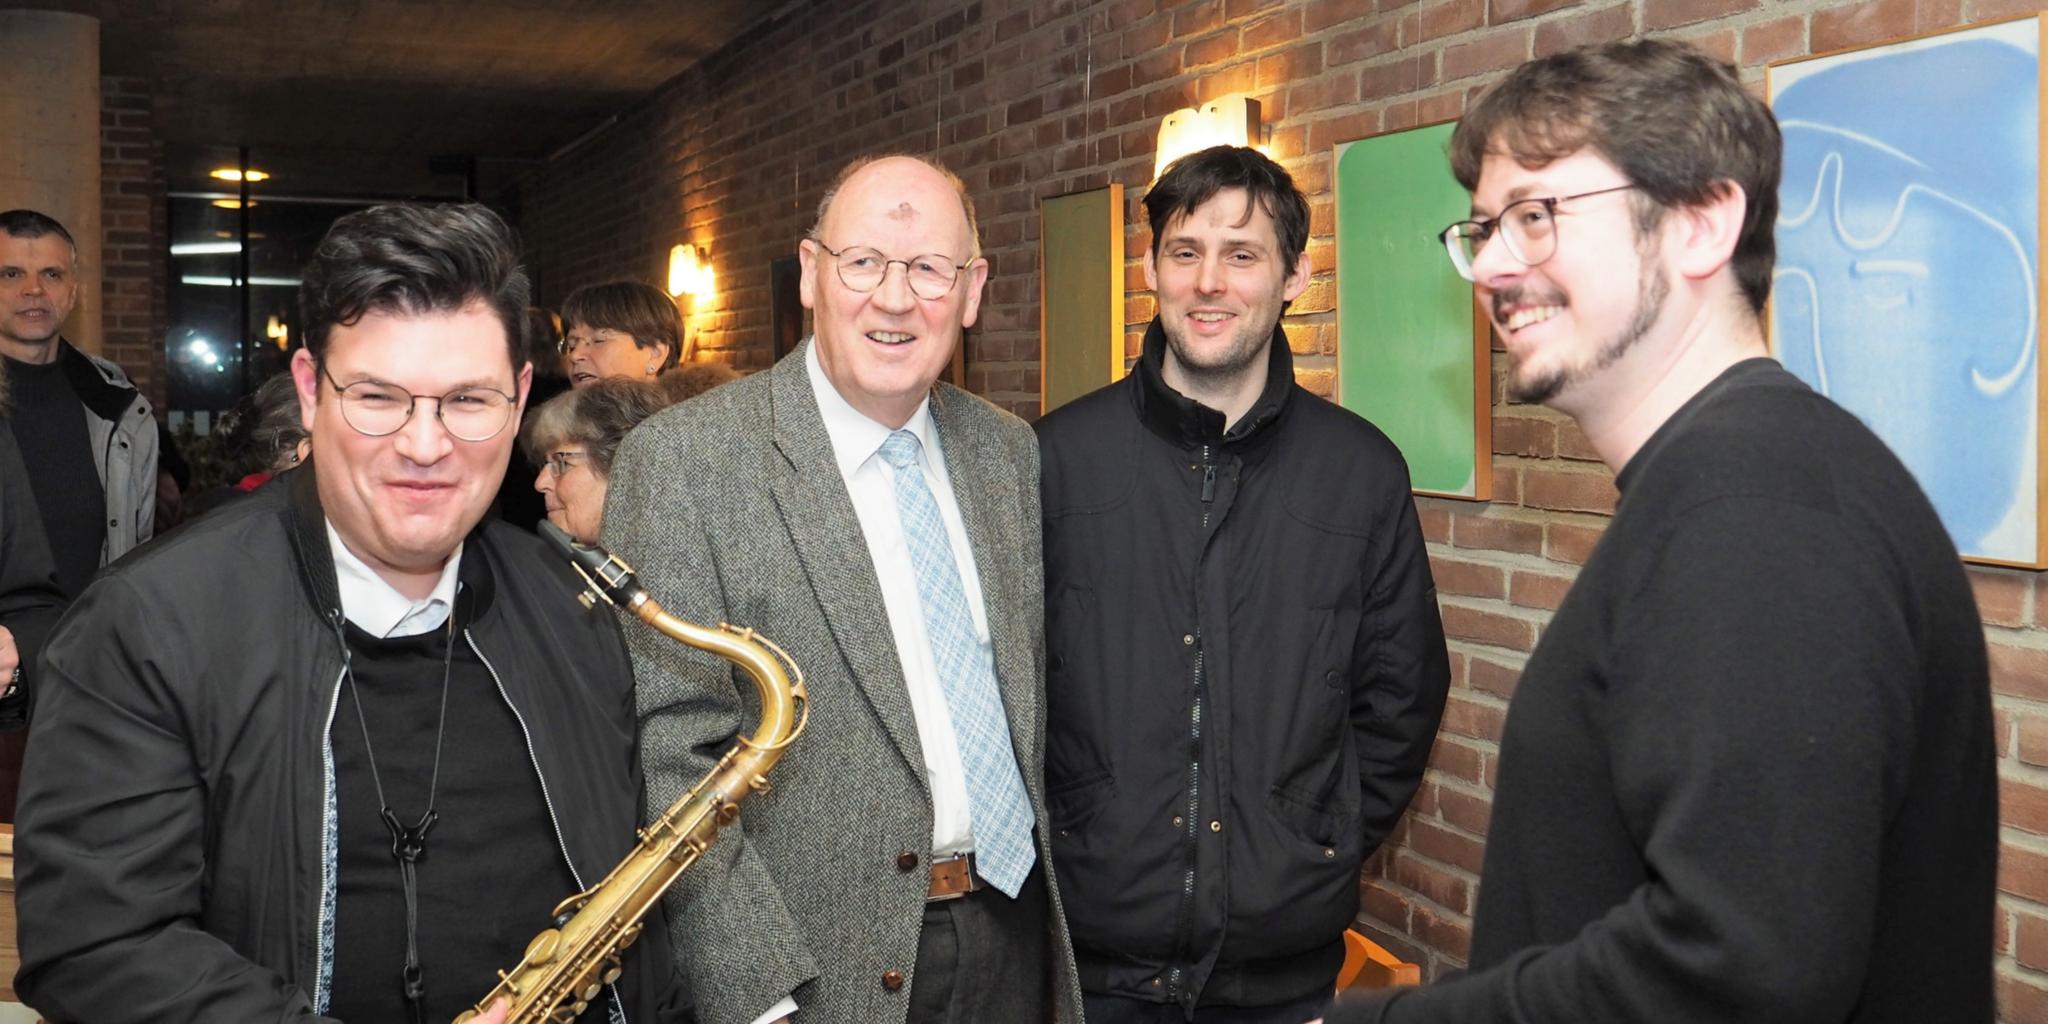 Die Musiker Carlos Wagner (links) und Johannes Still (rechts) mit dem bildenden Künstler Peter Böhnisch (zweiter von rechts) und dem Vorsitzenden vom gastgebenden Förderverein, Wolfram Viertelhaus.